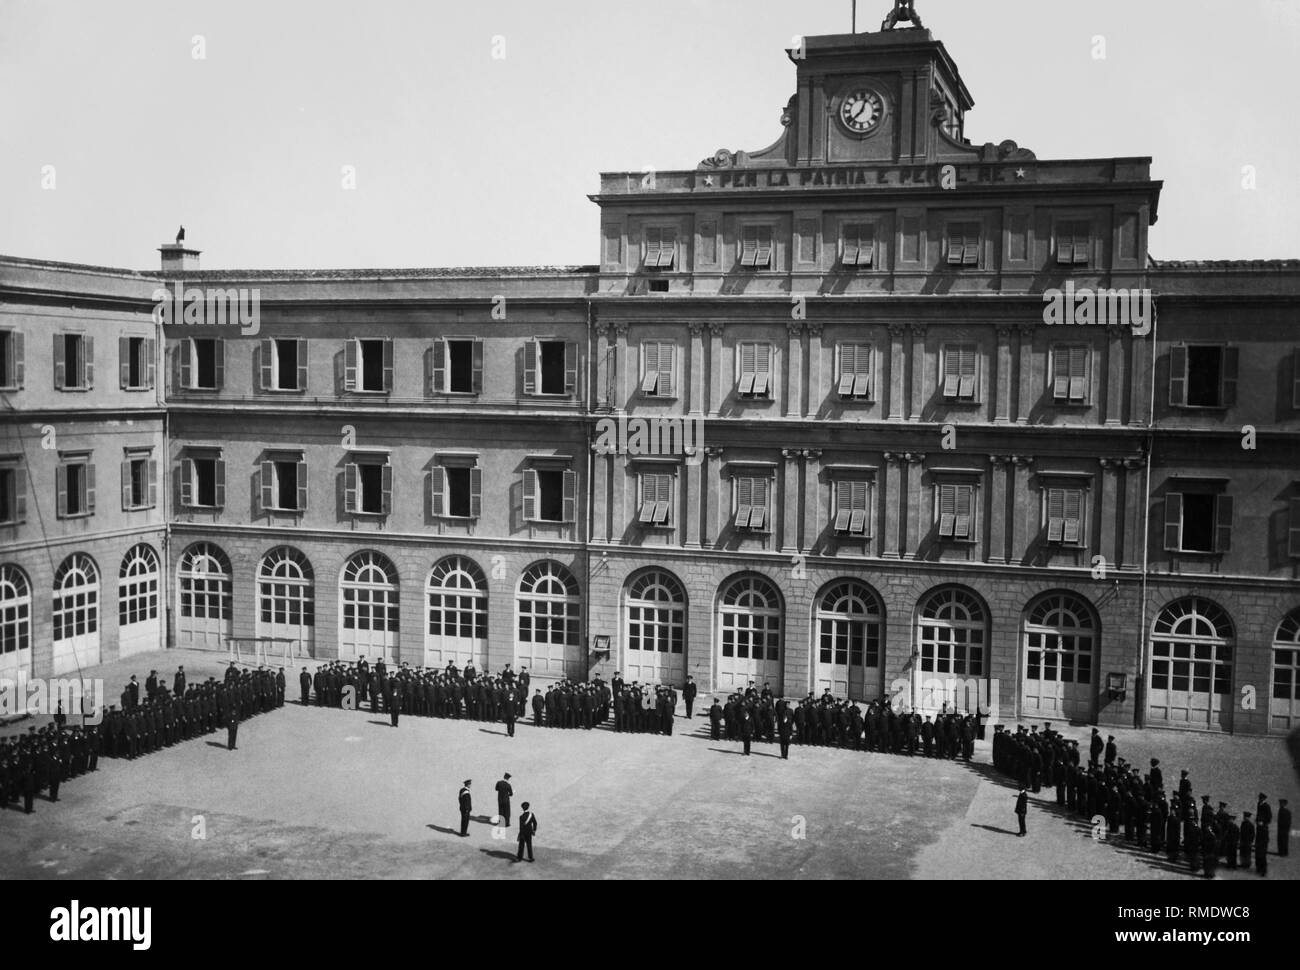 Europa, Italien, Toskana, Livorno, Ansicht der Naval Academy mit Kadetten in der Piazzale della Regia, 1920-30 Stockfoto